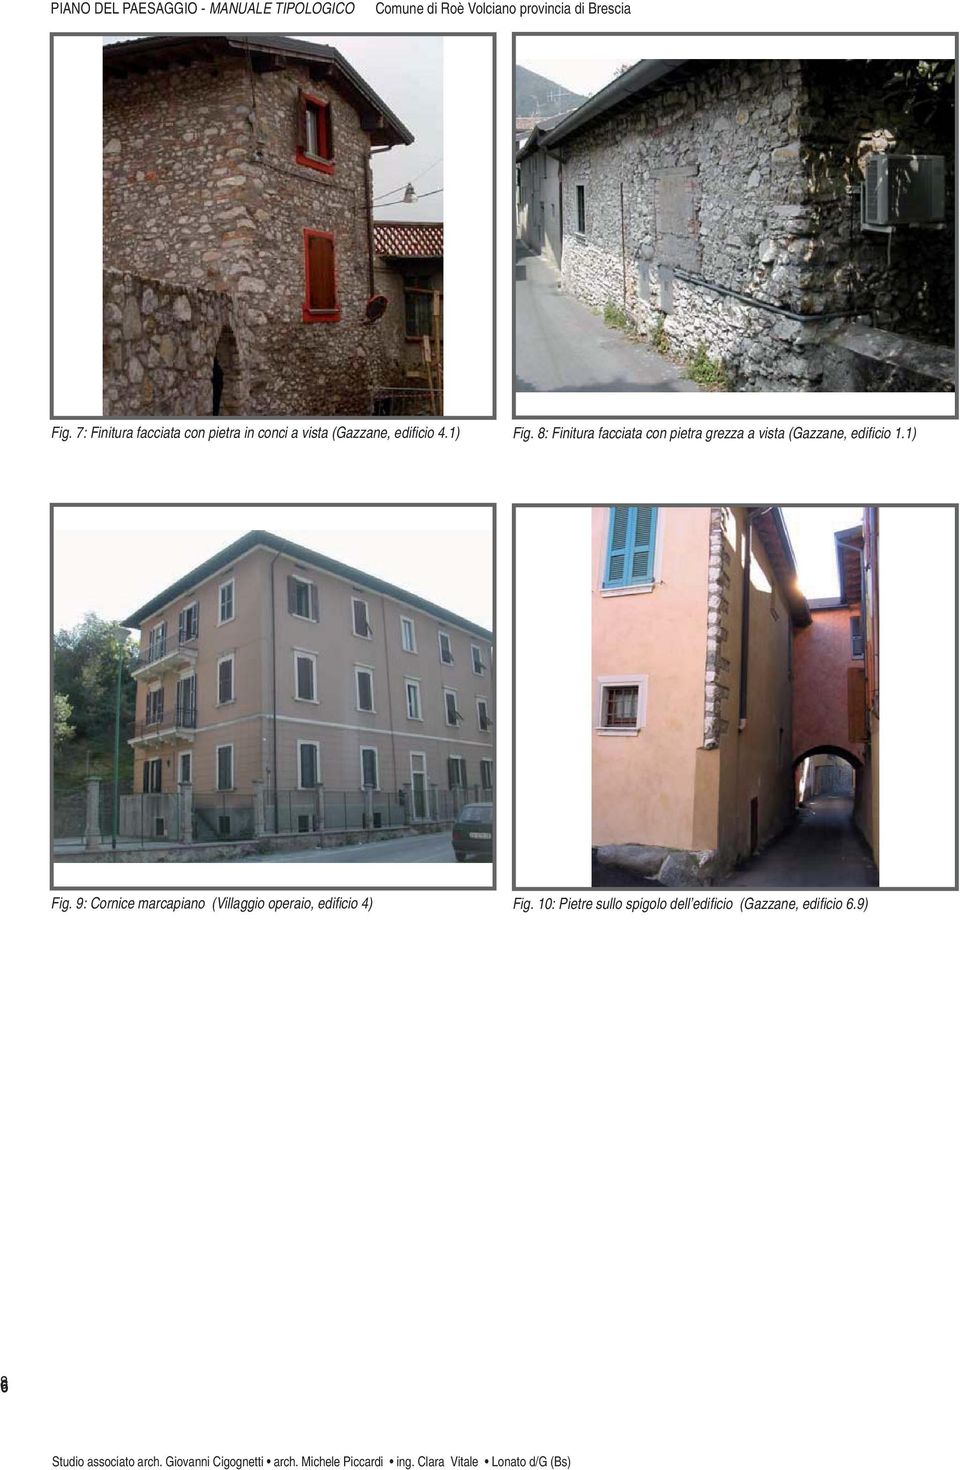 8: Finitura facciata con pietra grezza a vista (Gazzane, edifi cio 1.1) Fig.